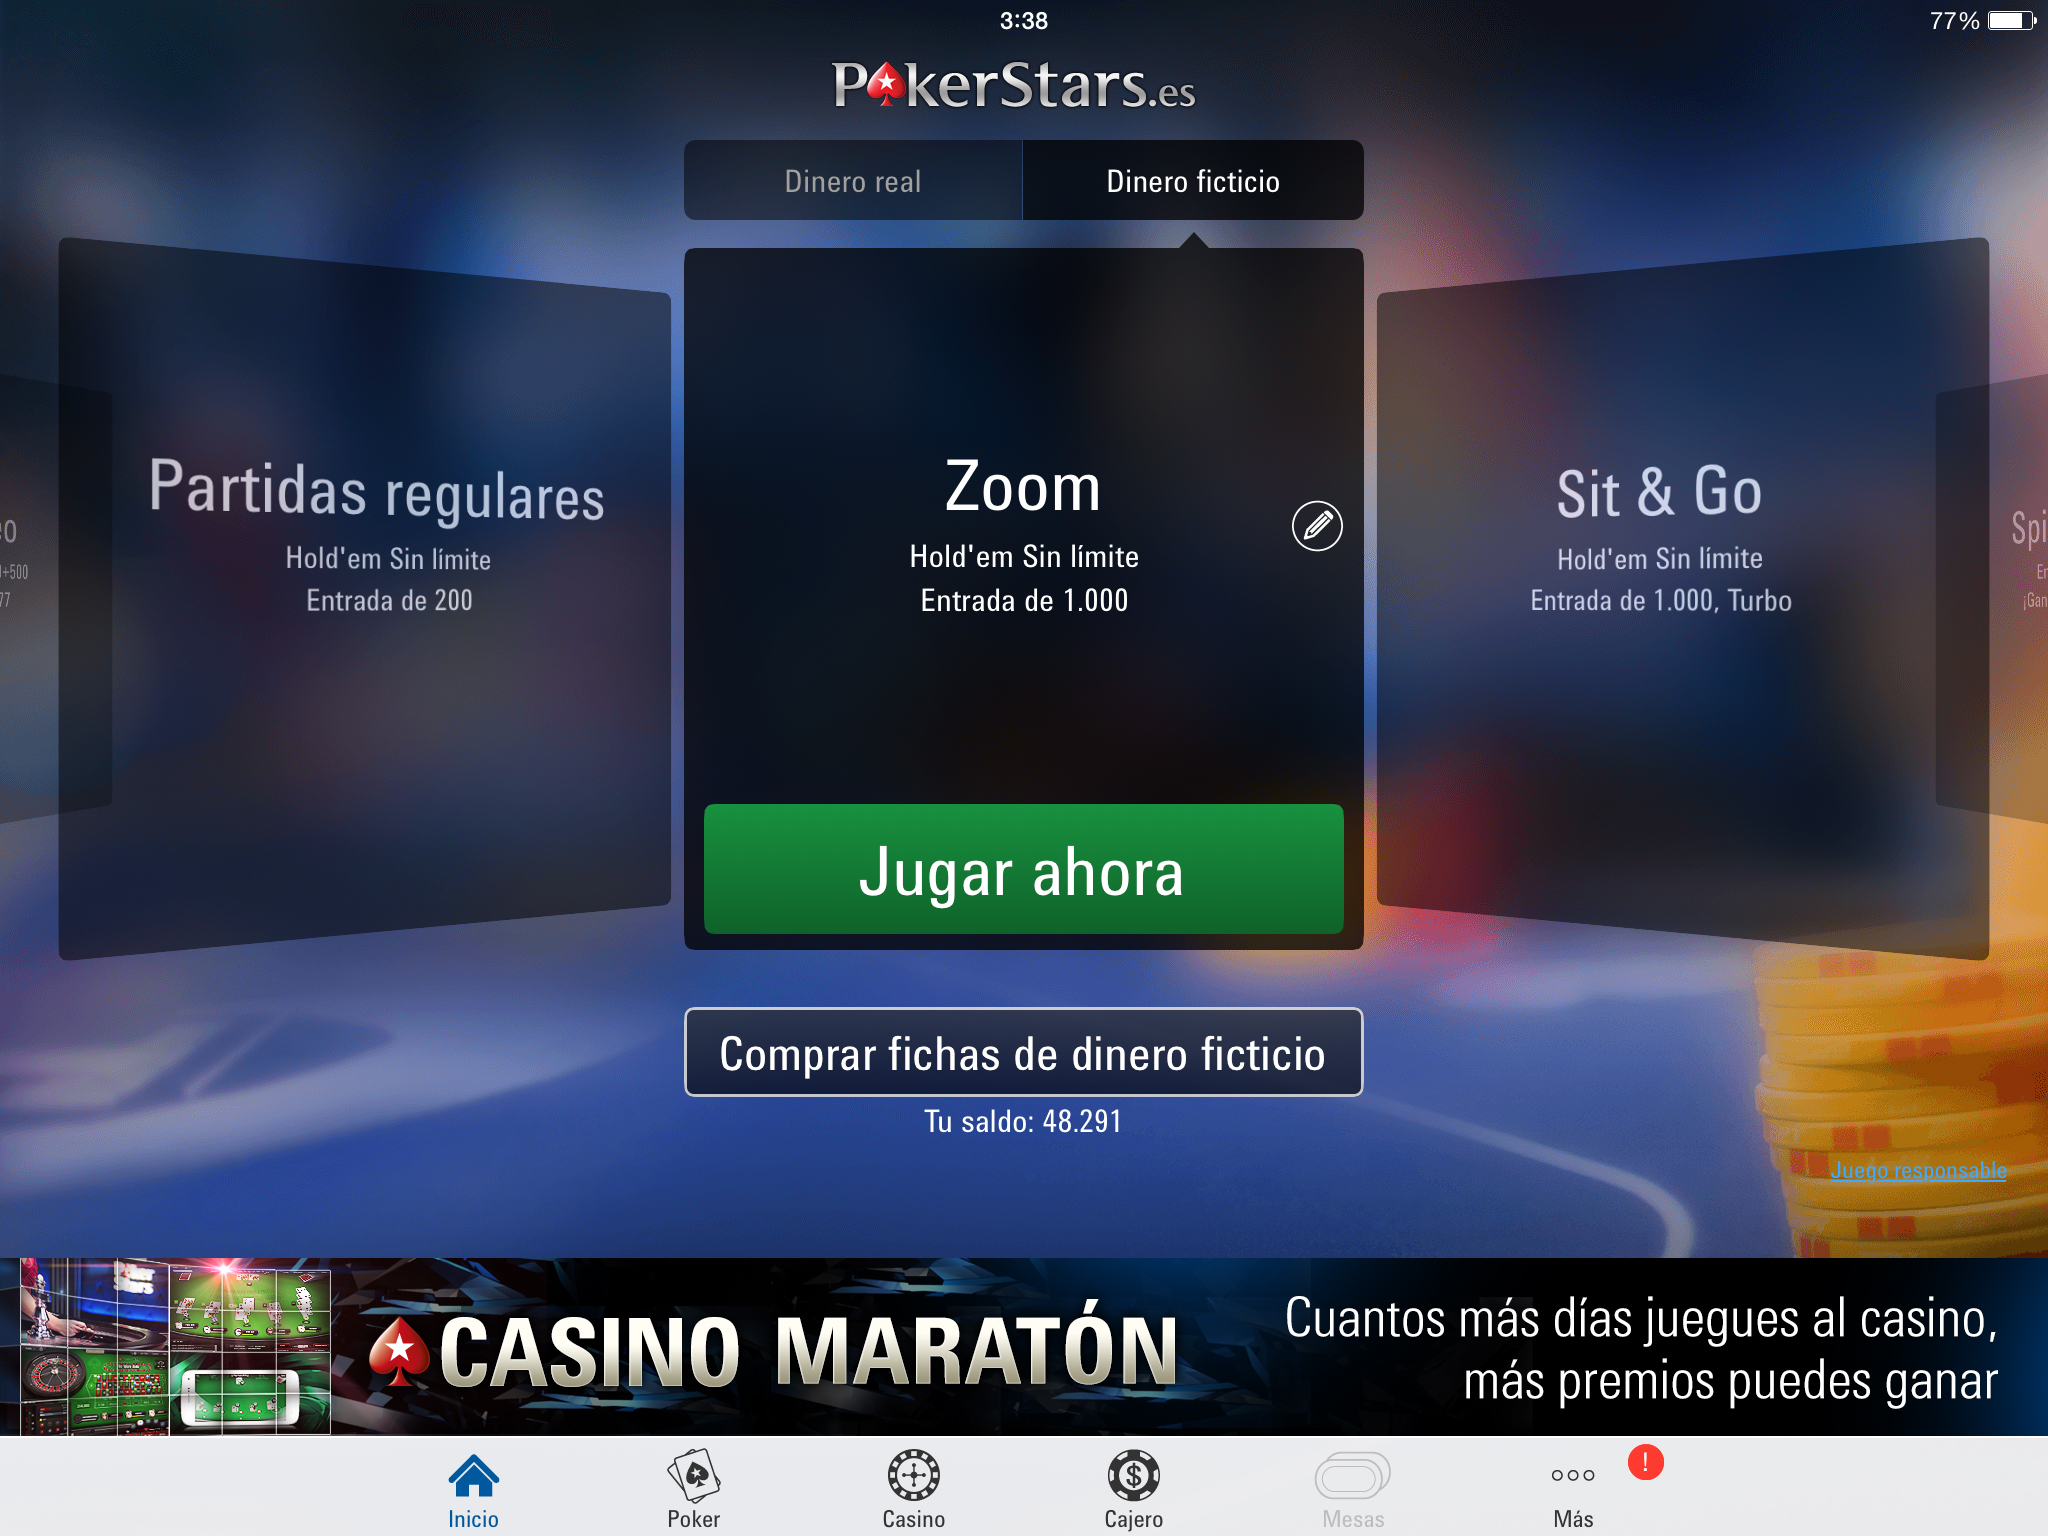 Primera pantalla que vemos al abrir la aplicación de póker online PokerStars.